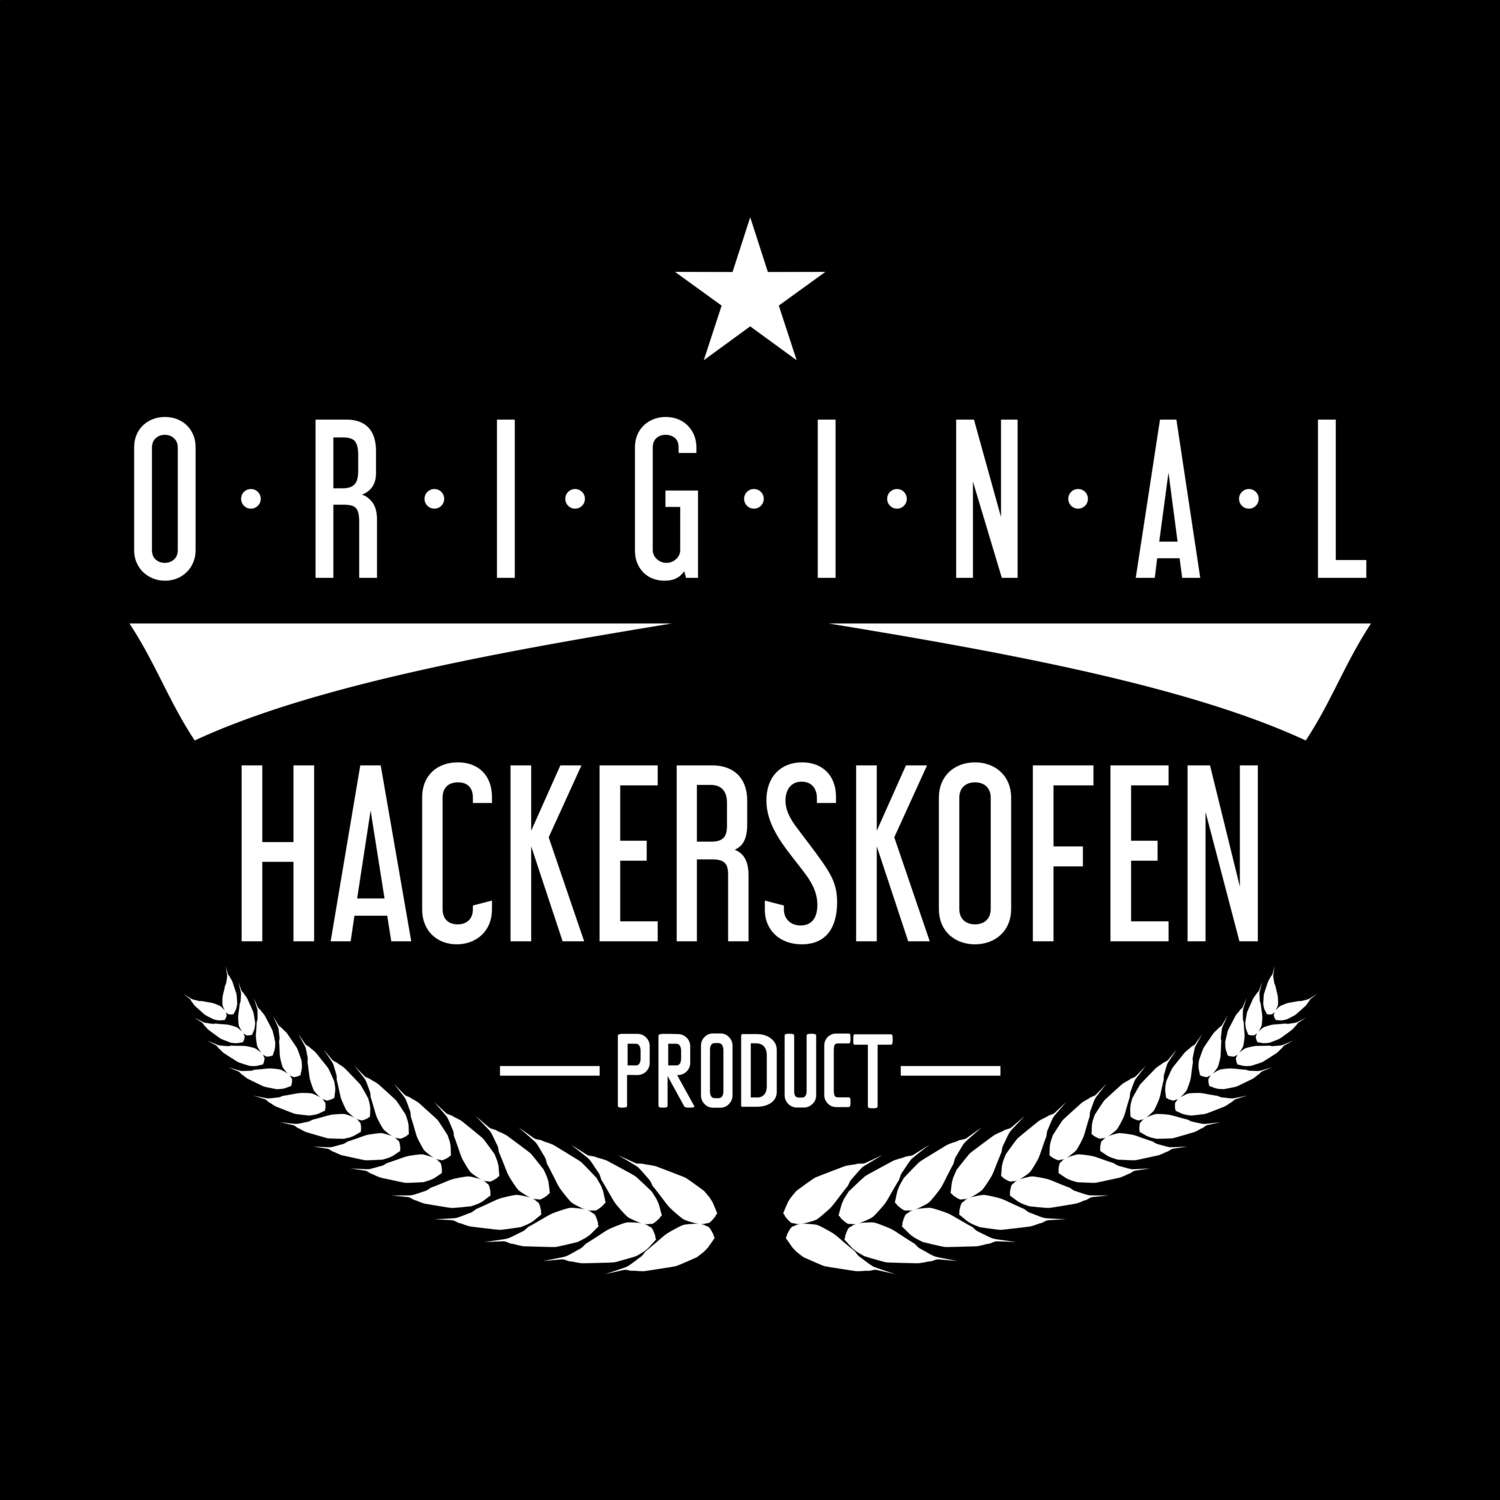 Hackerskofen T-Shirt »Original Product«